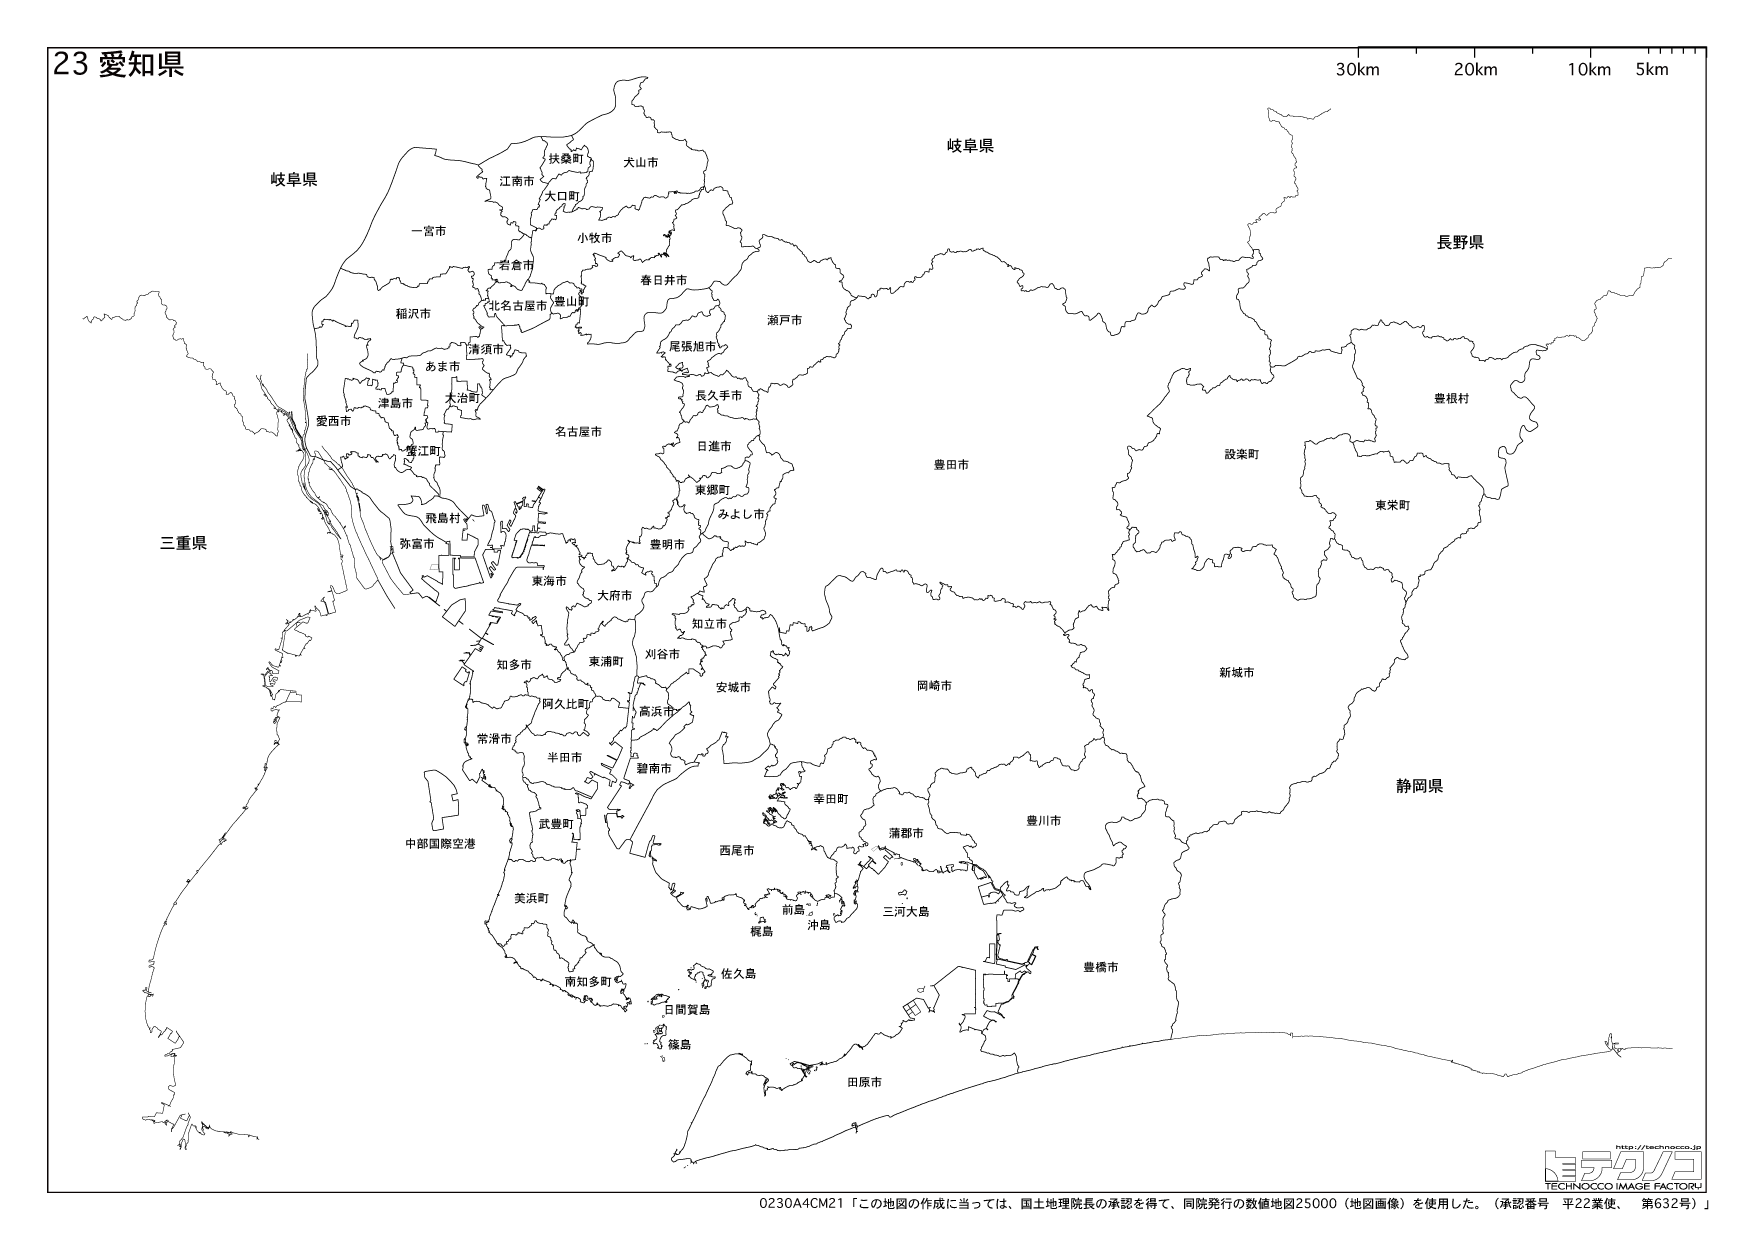 愛知県の白地図と市町村の合併情報